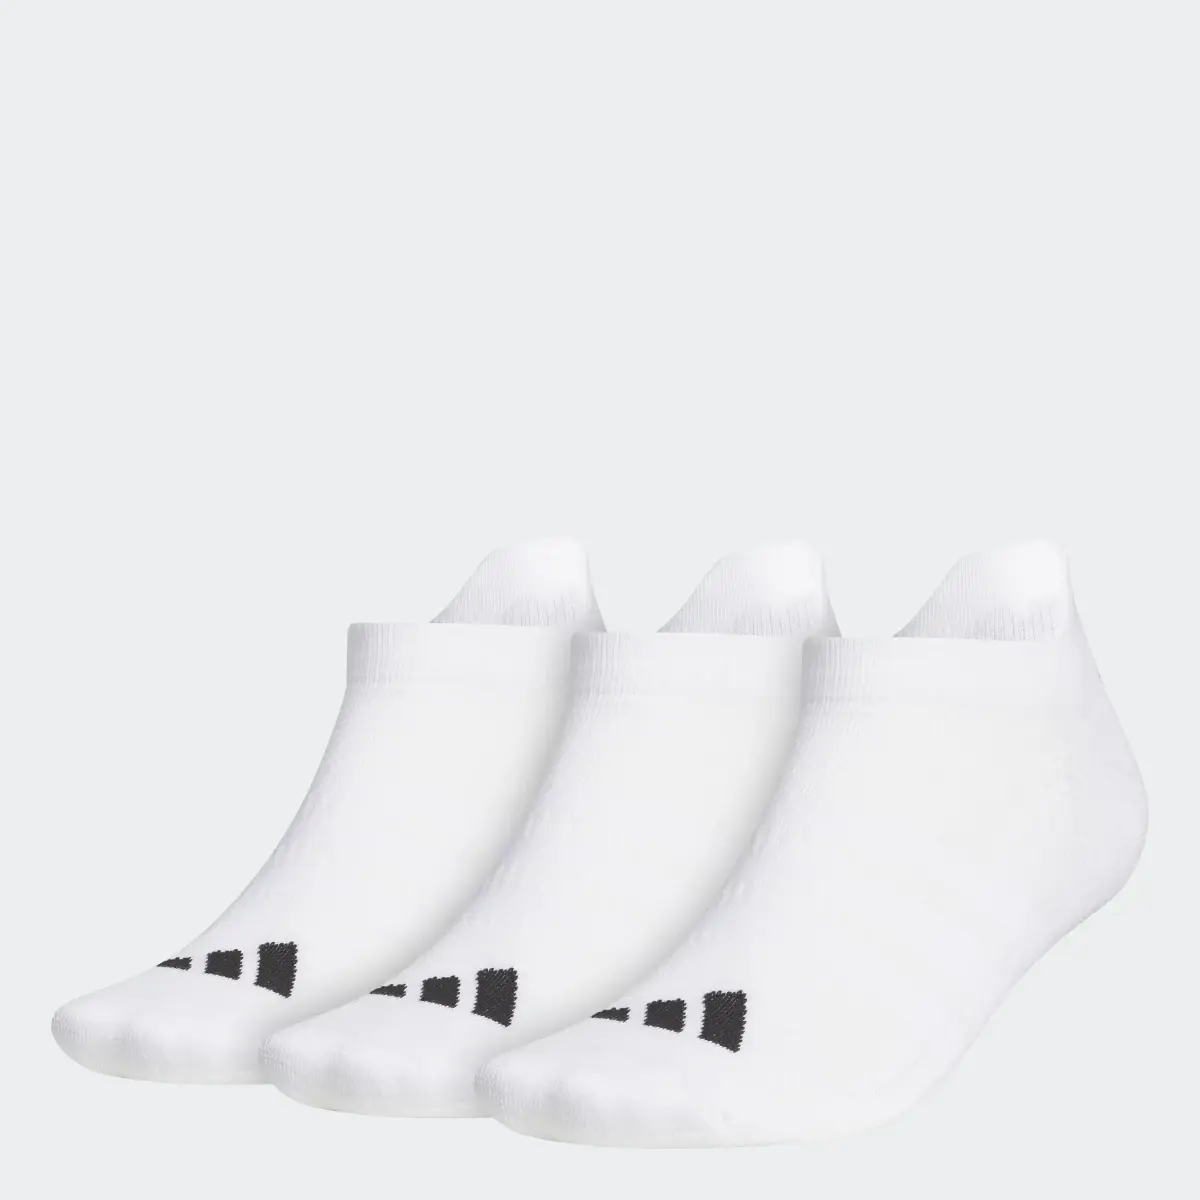 Adidas Socquettes (3 paires). 1